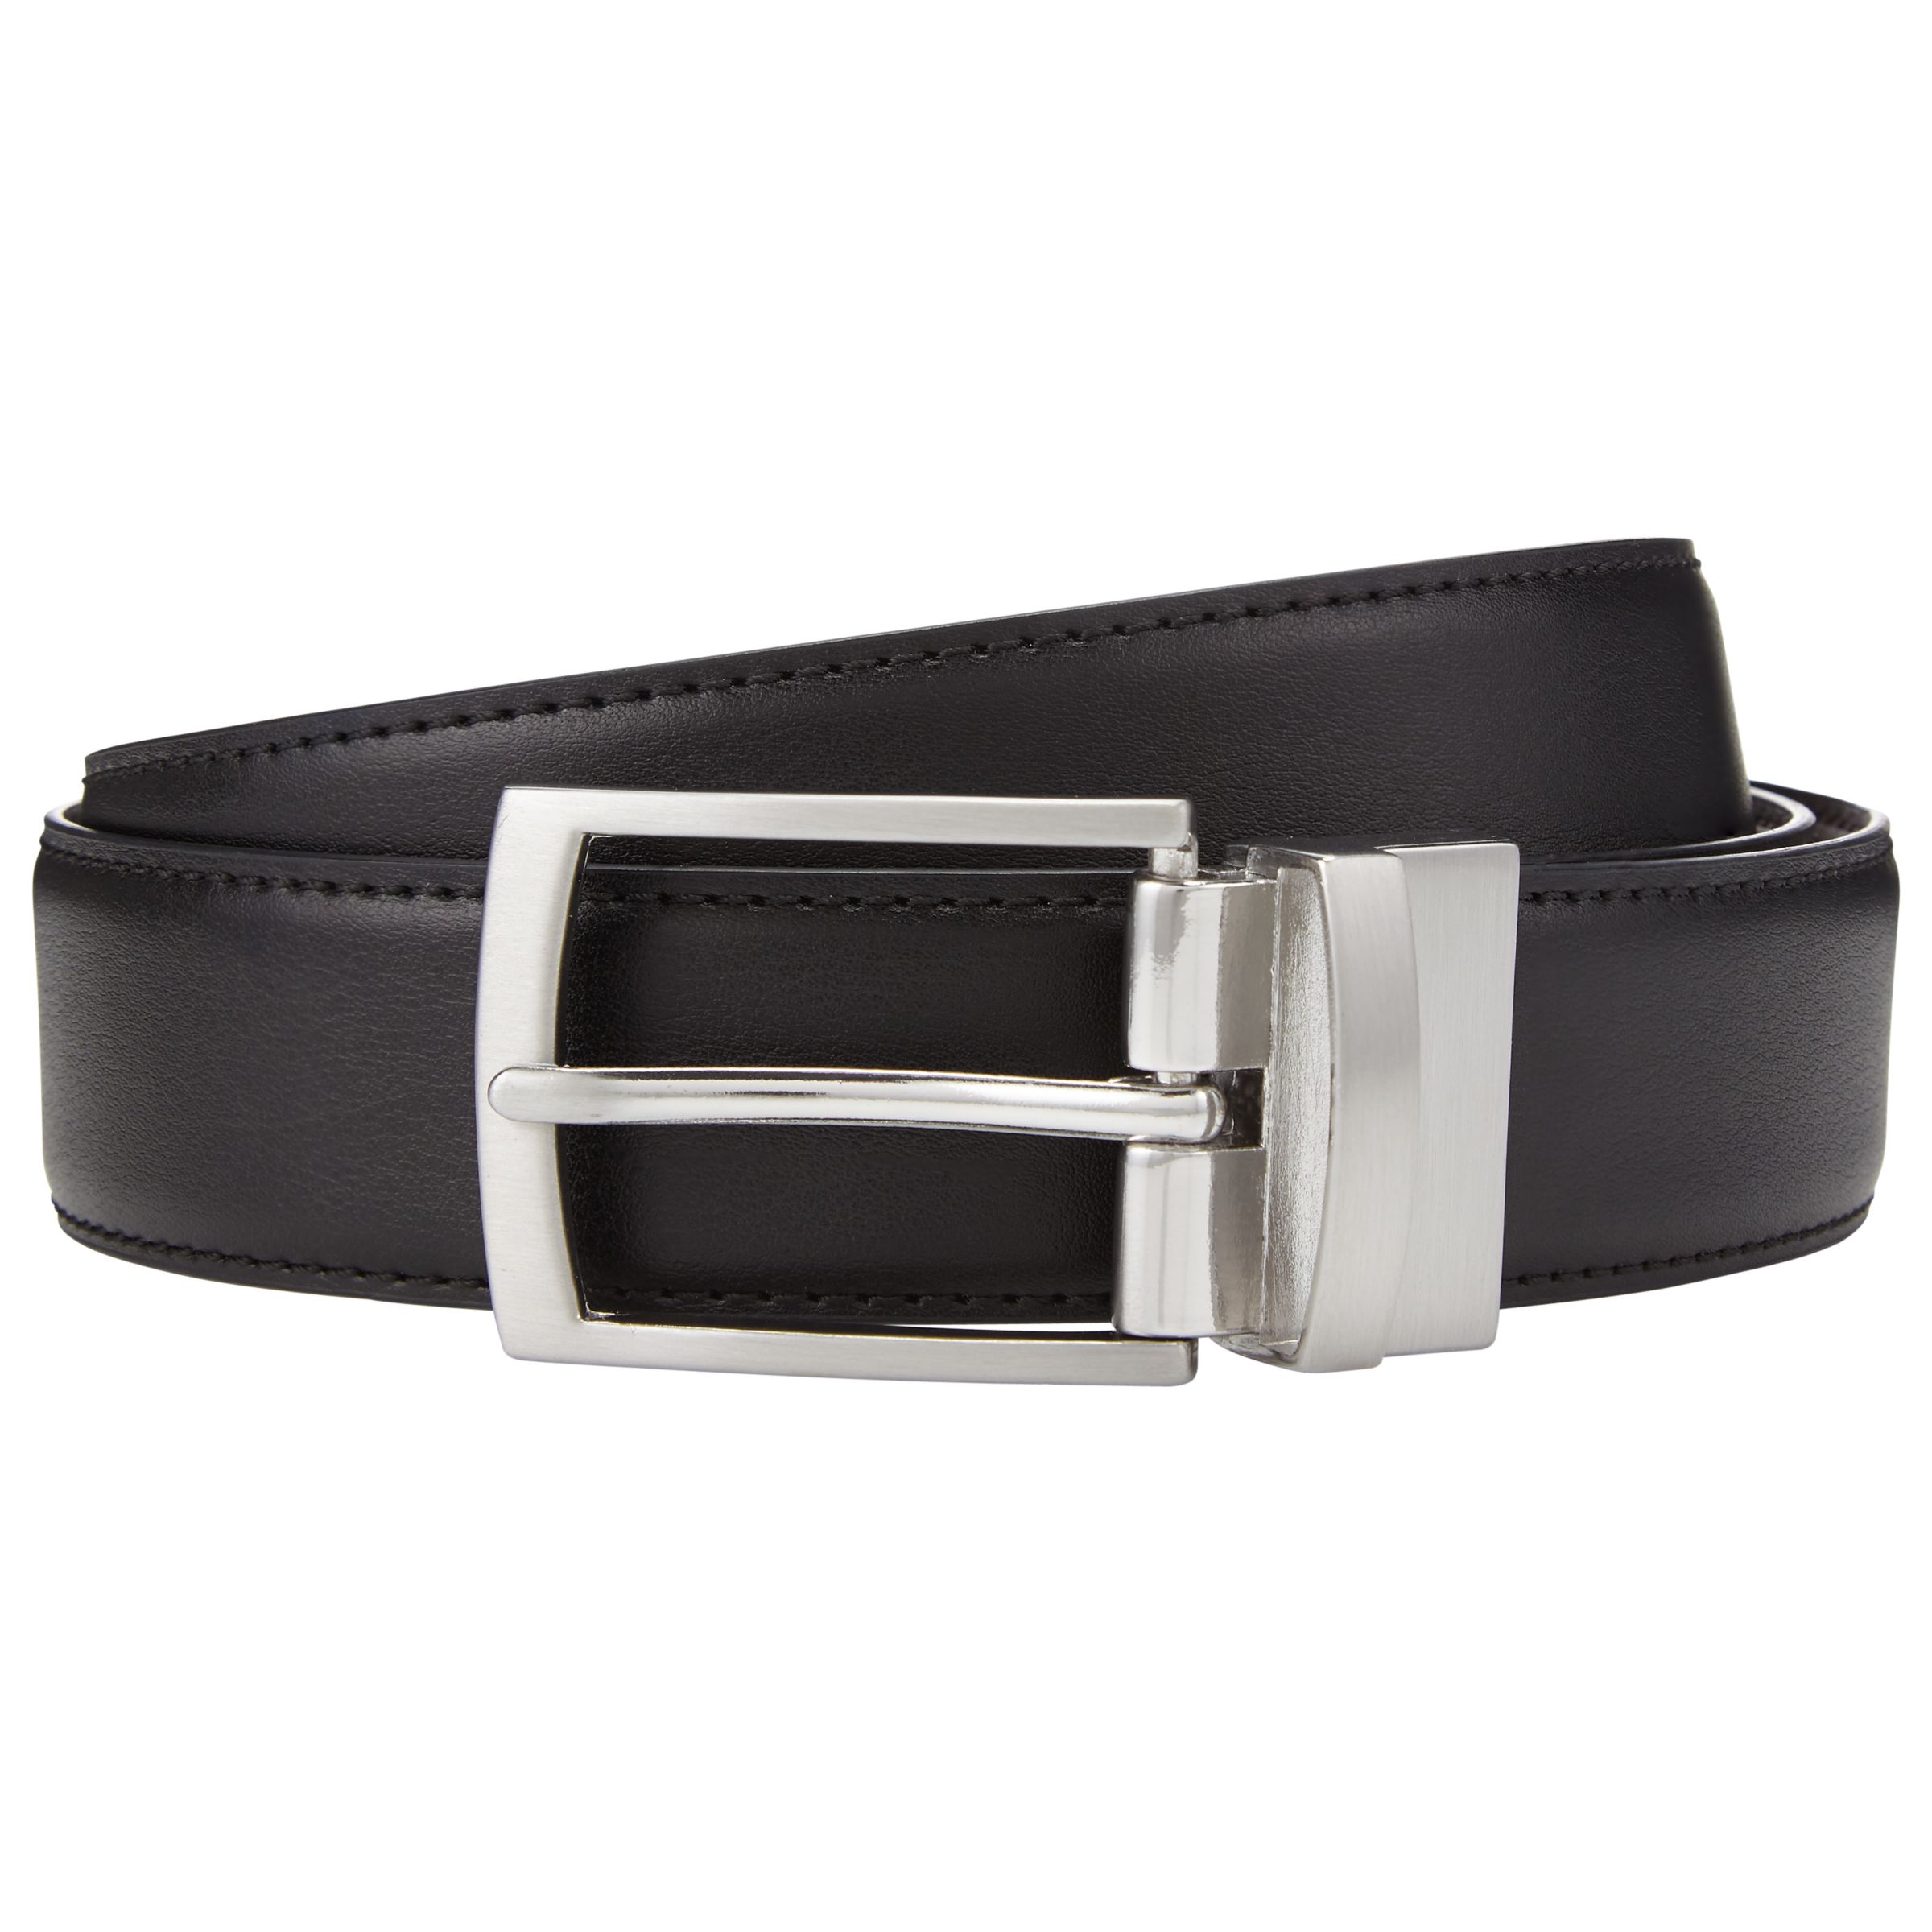 John Lewis Reversible Leather Belt, Black/Brown at John Lewis & Partners